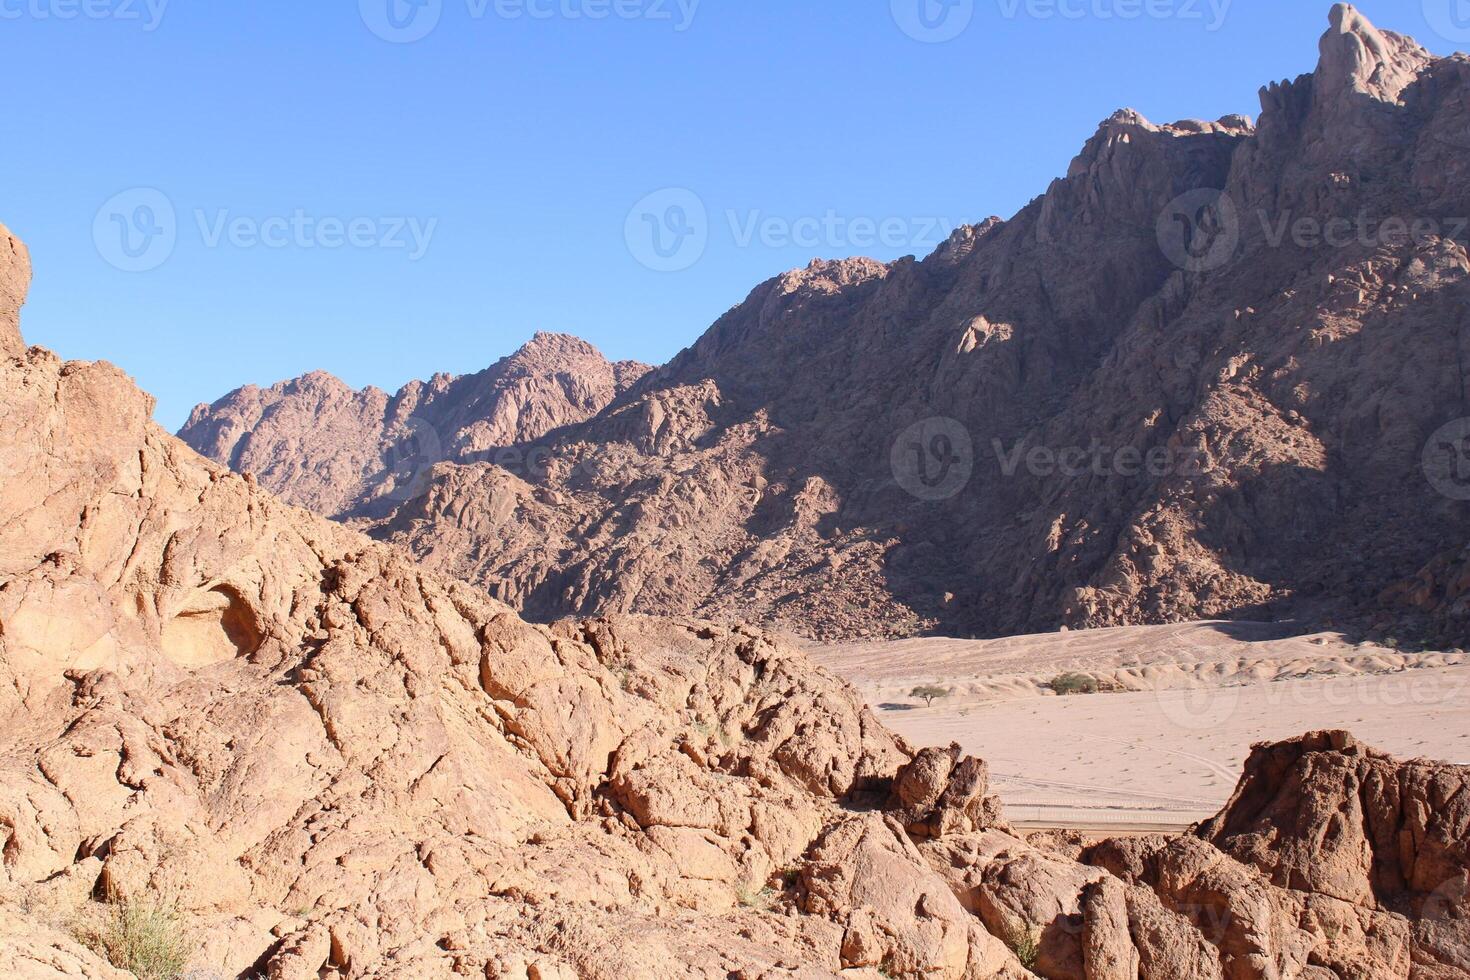 een mooi dag visie van de berg reeks aangrenzend naar spleet rots in tabuk, saudi Arabië. foto